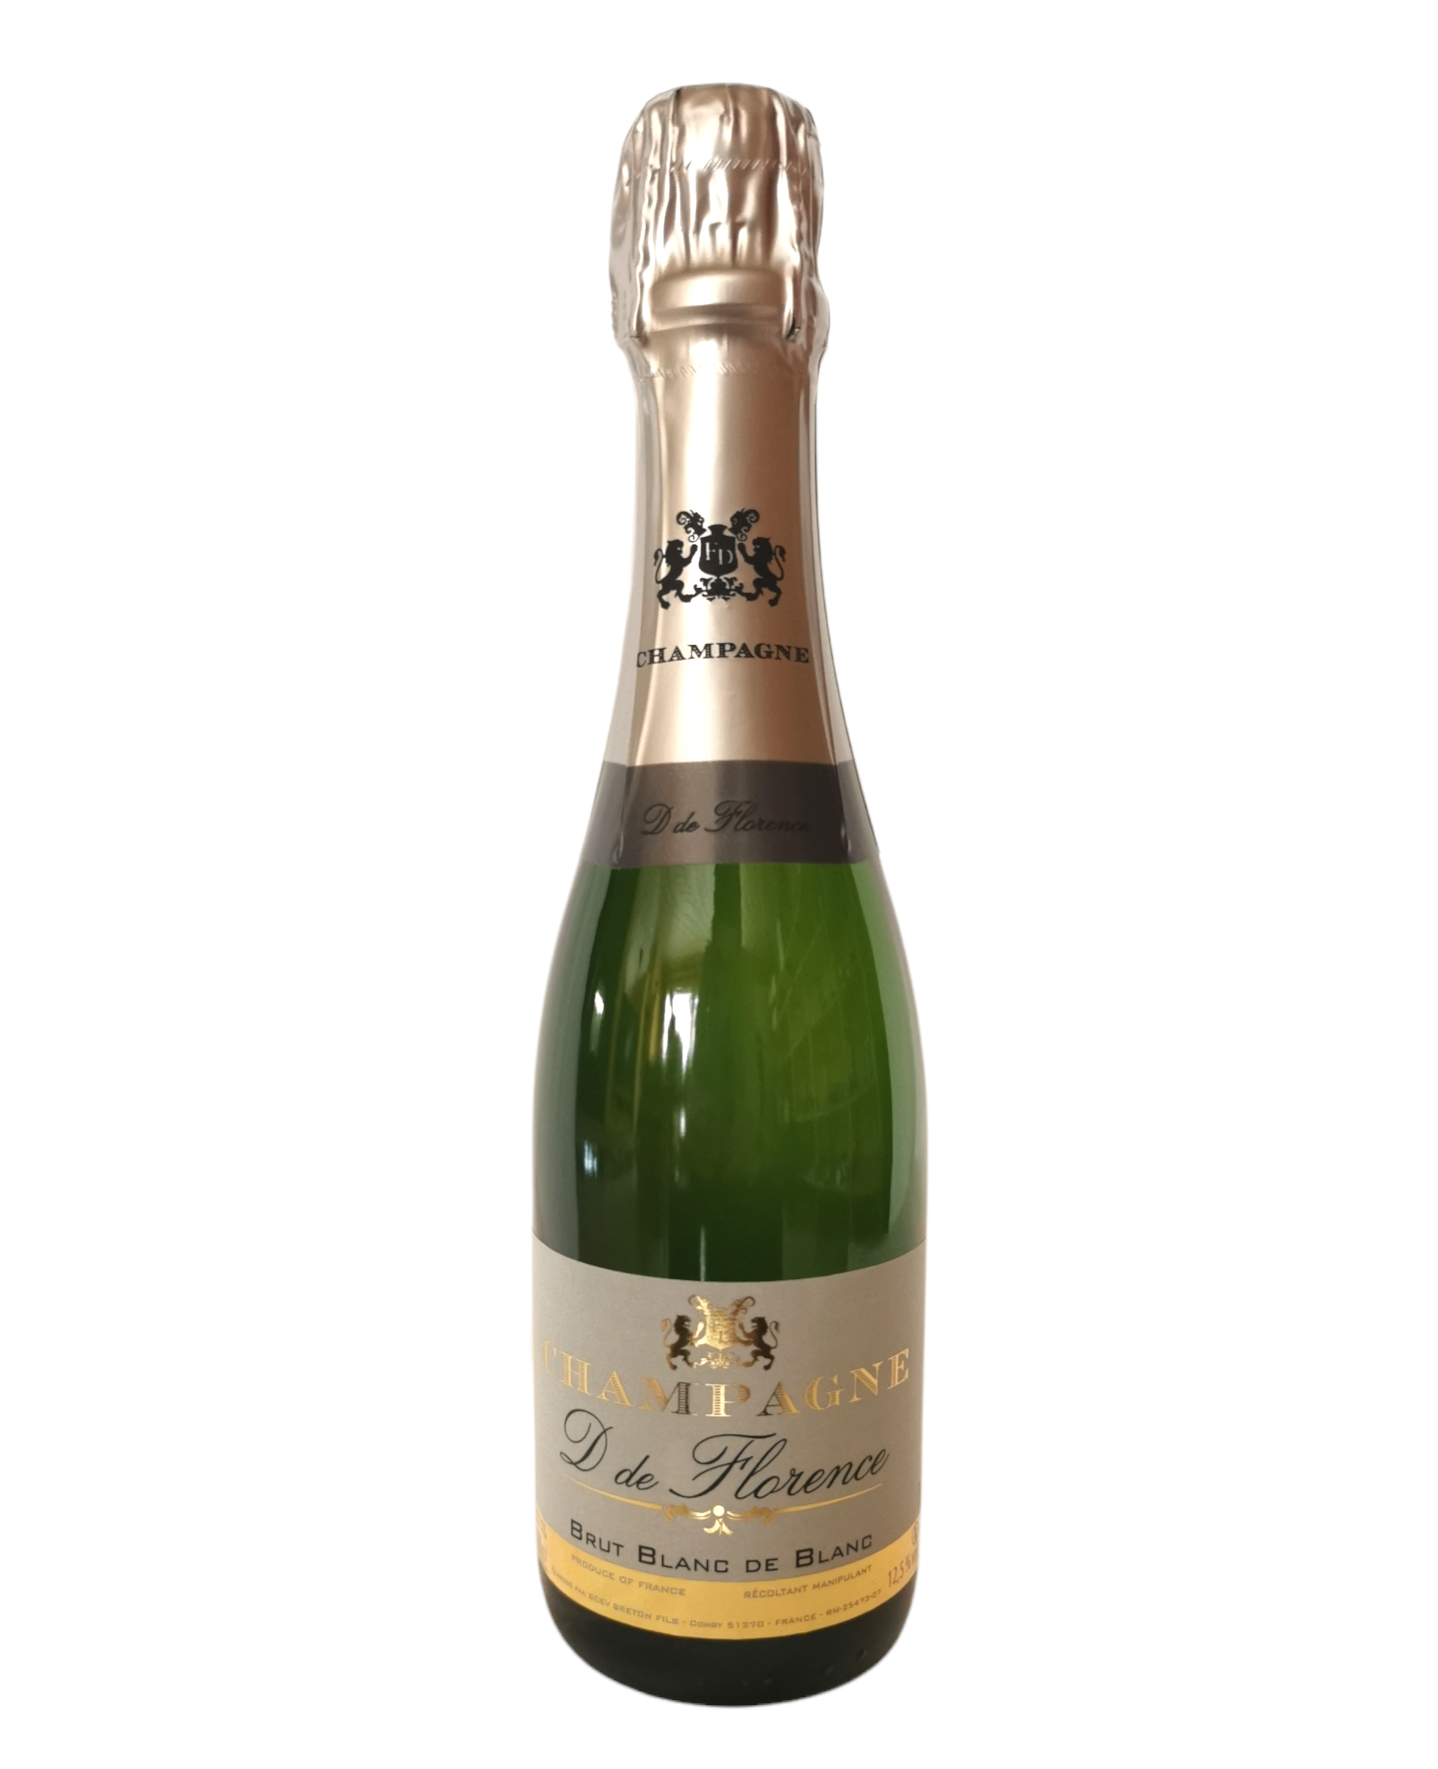 Champagne D de Florence Blanc de Blancs 12.5% 37.5cl